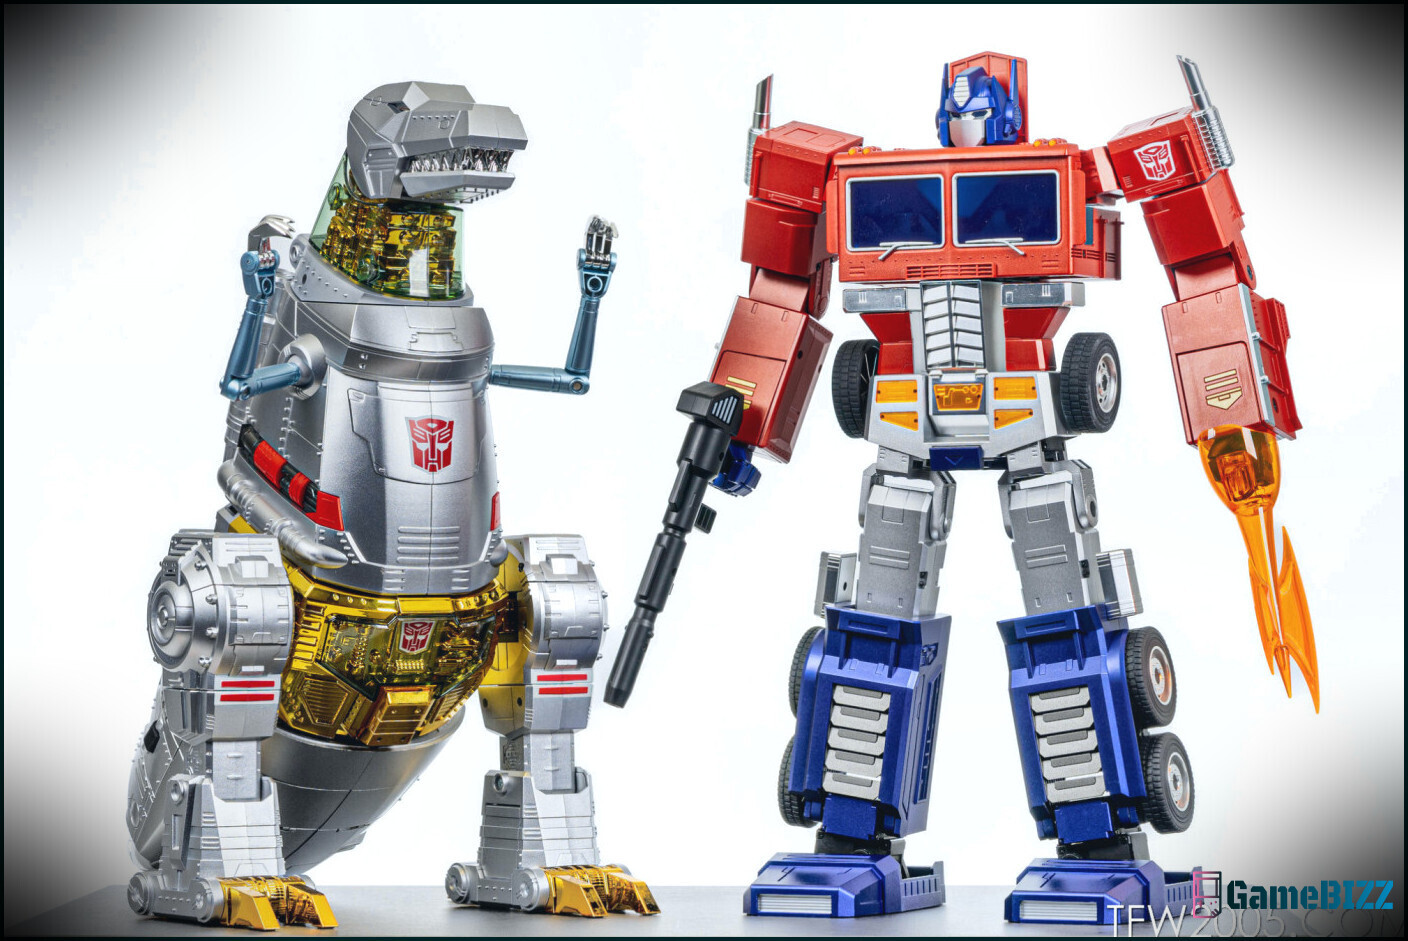 Transformers' gigantischer, sich automatisch verwandelnder Grimlock Robosen-Roboter kann jetzt vorbestellt werden